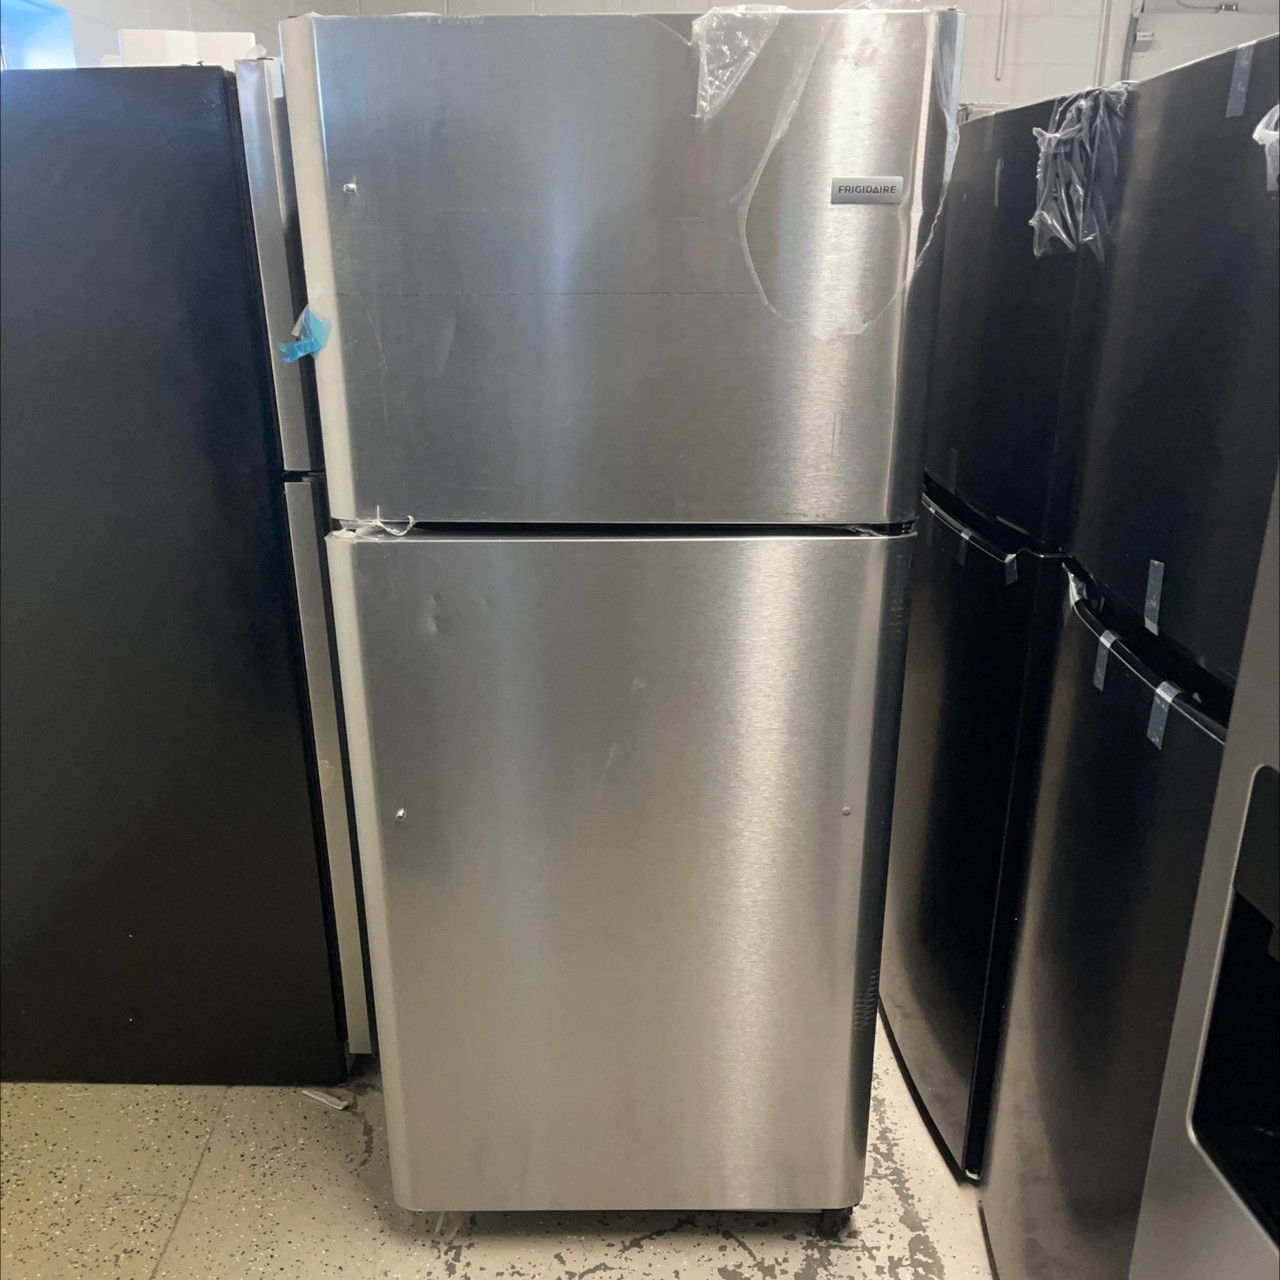 20.5 Cu. Ft. Top Freezer Refrigerator White-FRTD2021AW